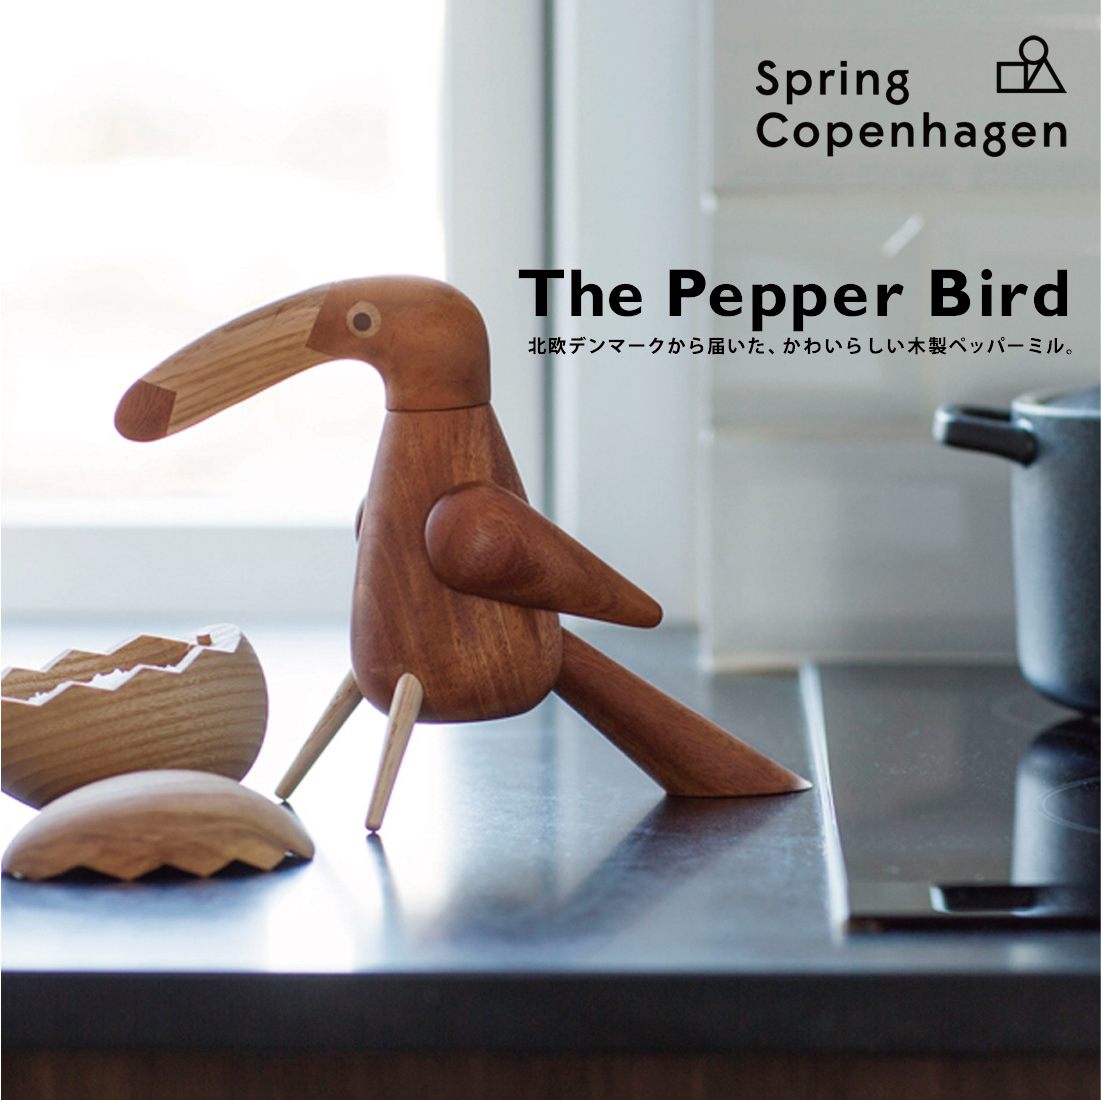 北欧デンマーク発ブランドSpringCopenhagenの木製ペッパーミル SpringCopenhagen 国産品 スプリングコペンハーゲン The 上質 ペッパーバード Bird ペッパーミル Pepper